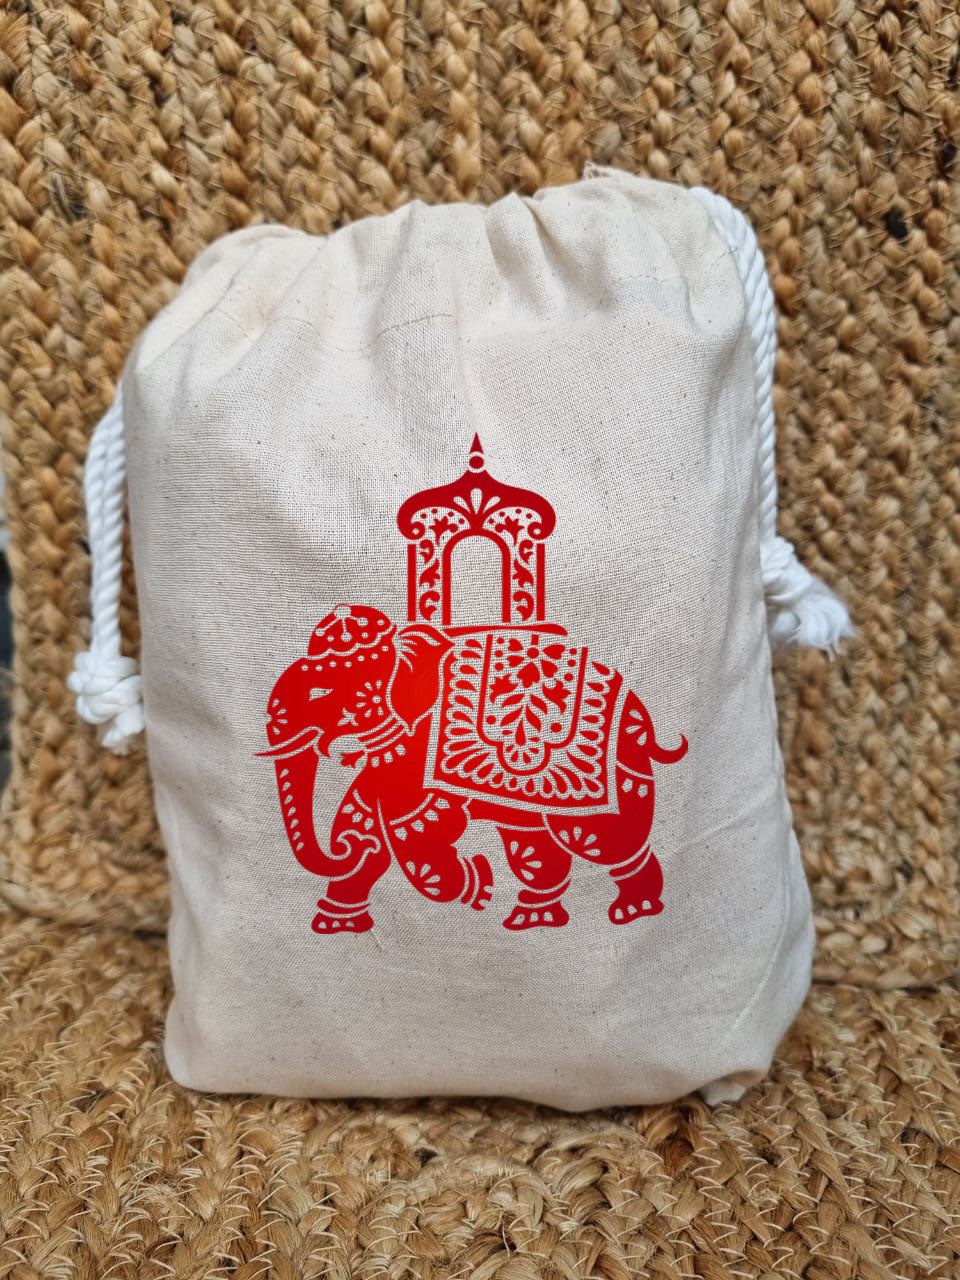 Rajasthani Royal Potli Bags for wedding